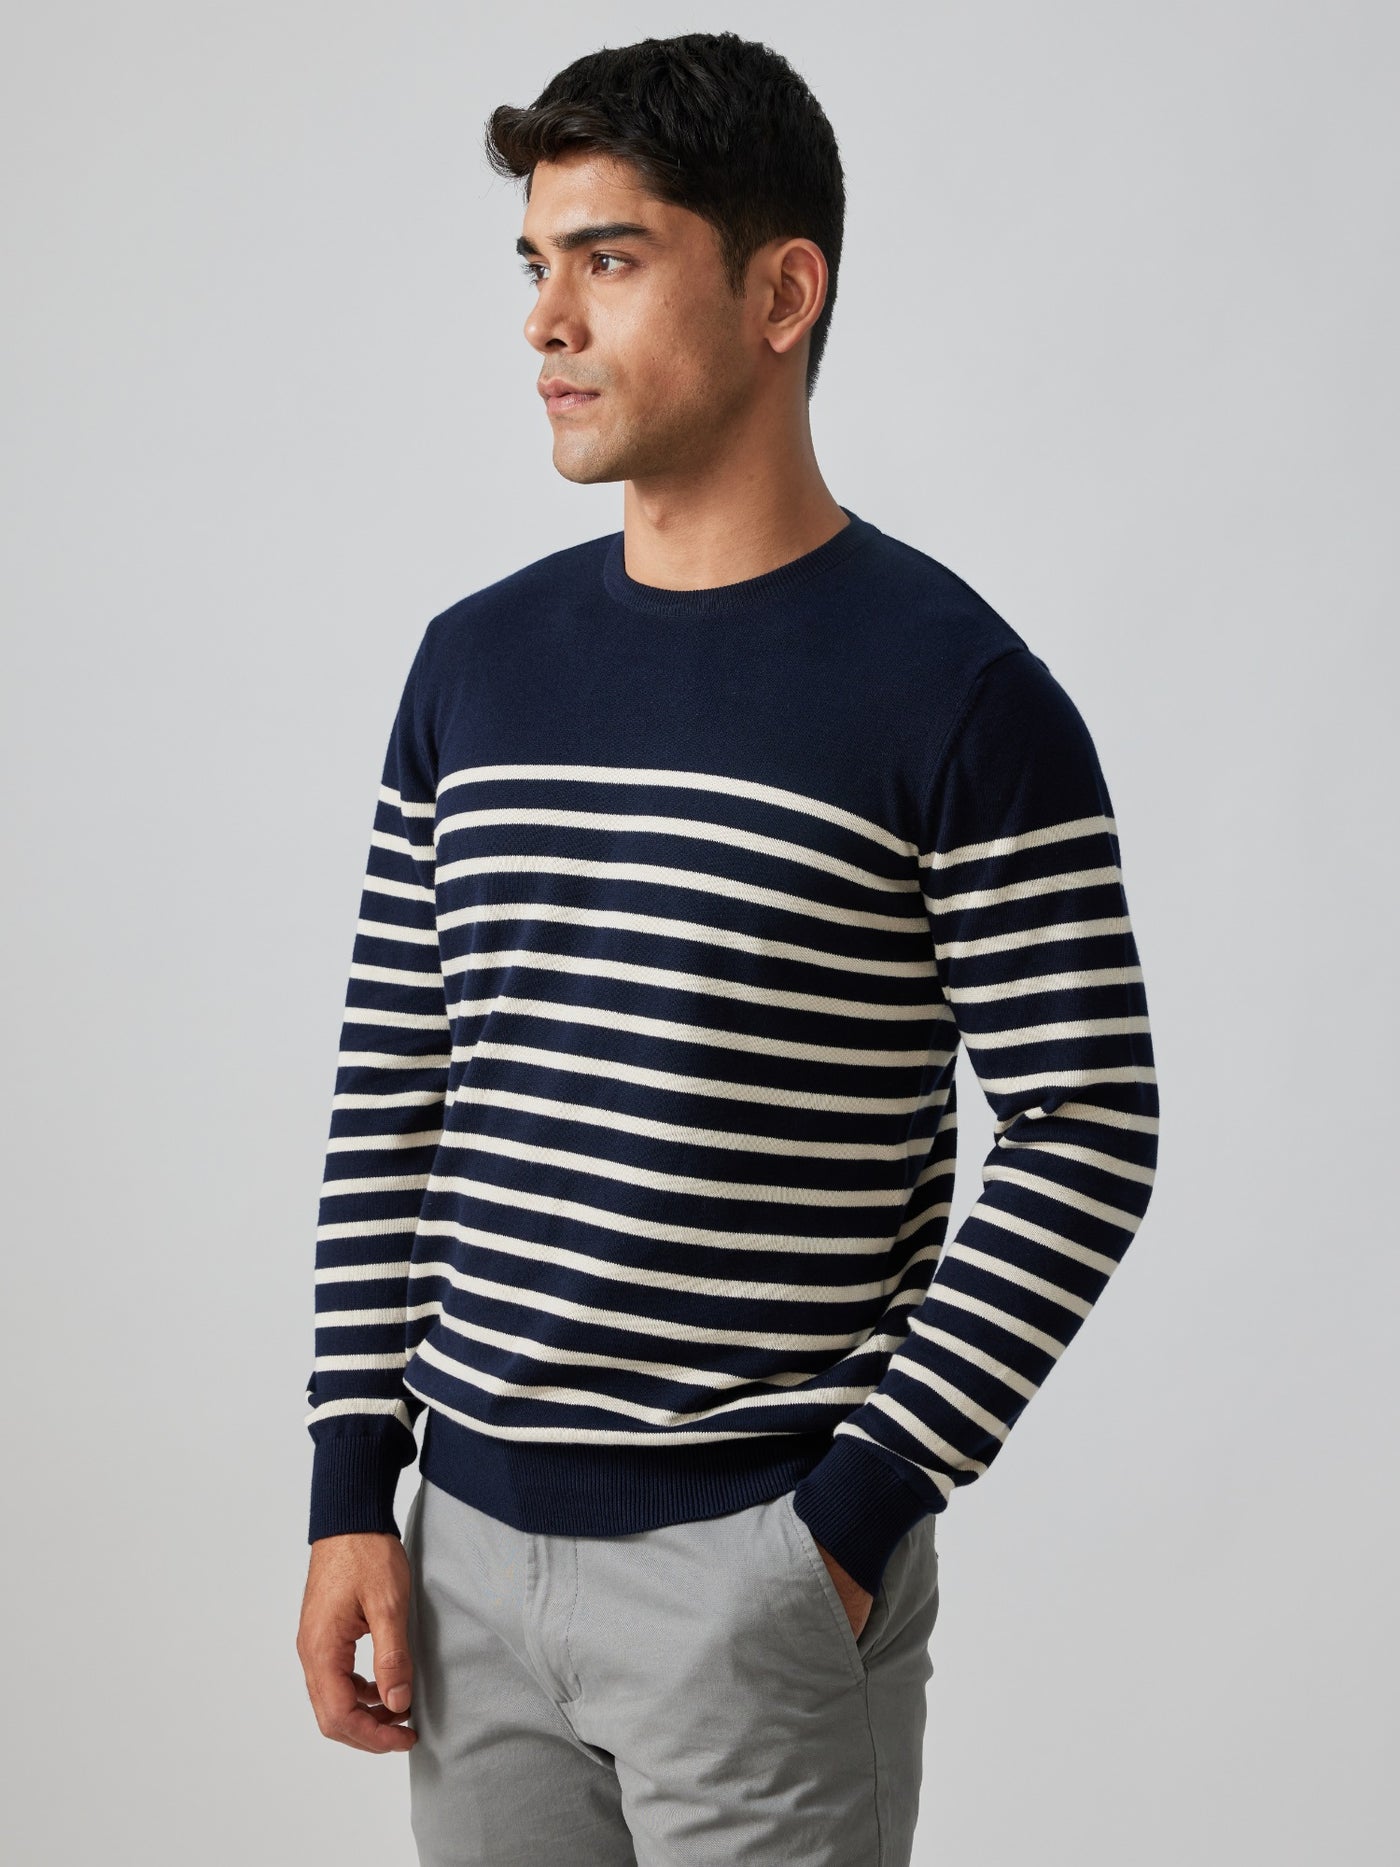 The Breton Stripe Pullover | Creatures of Habit